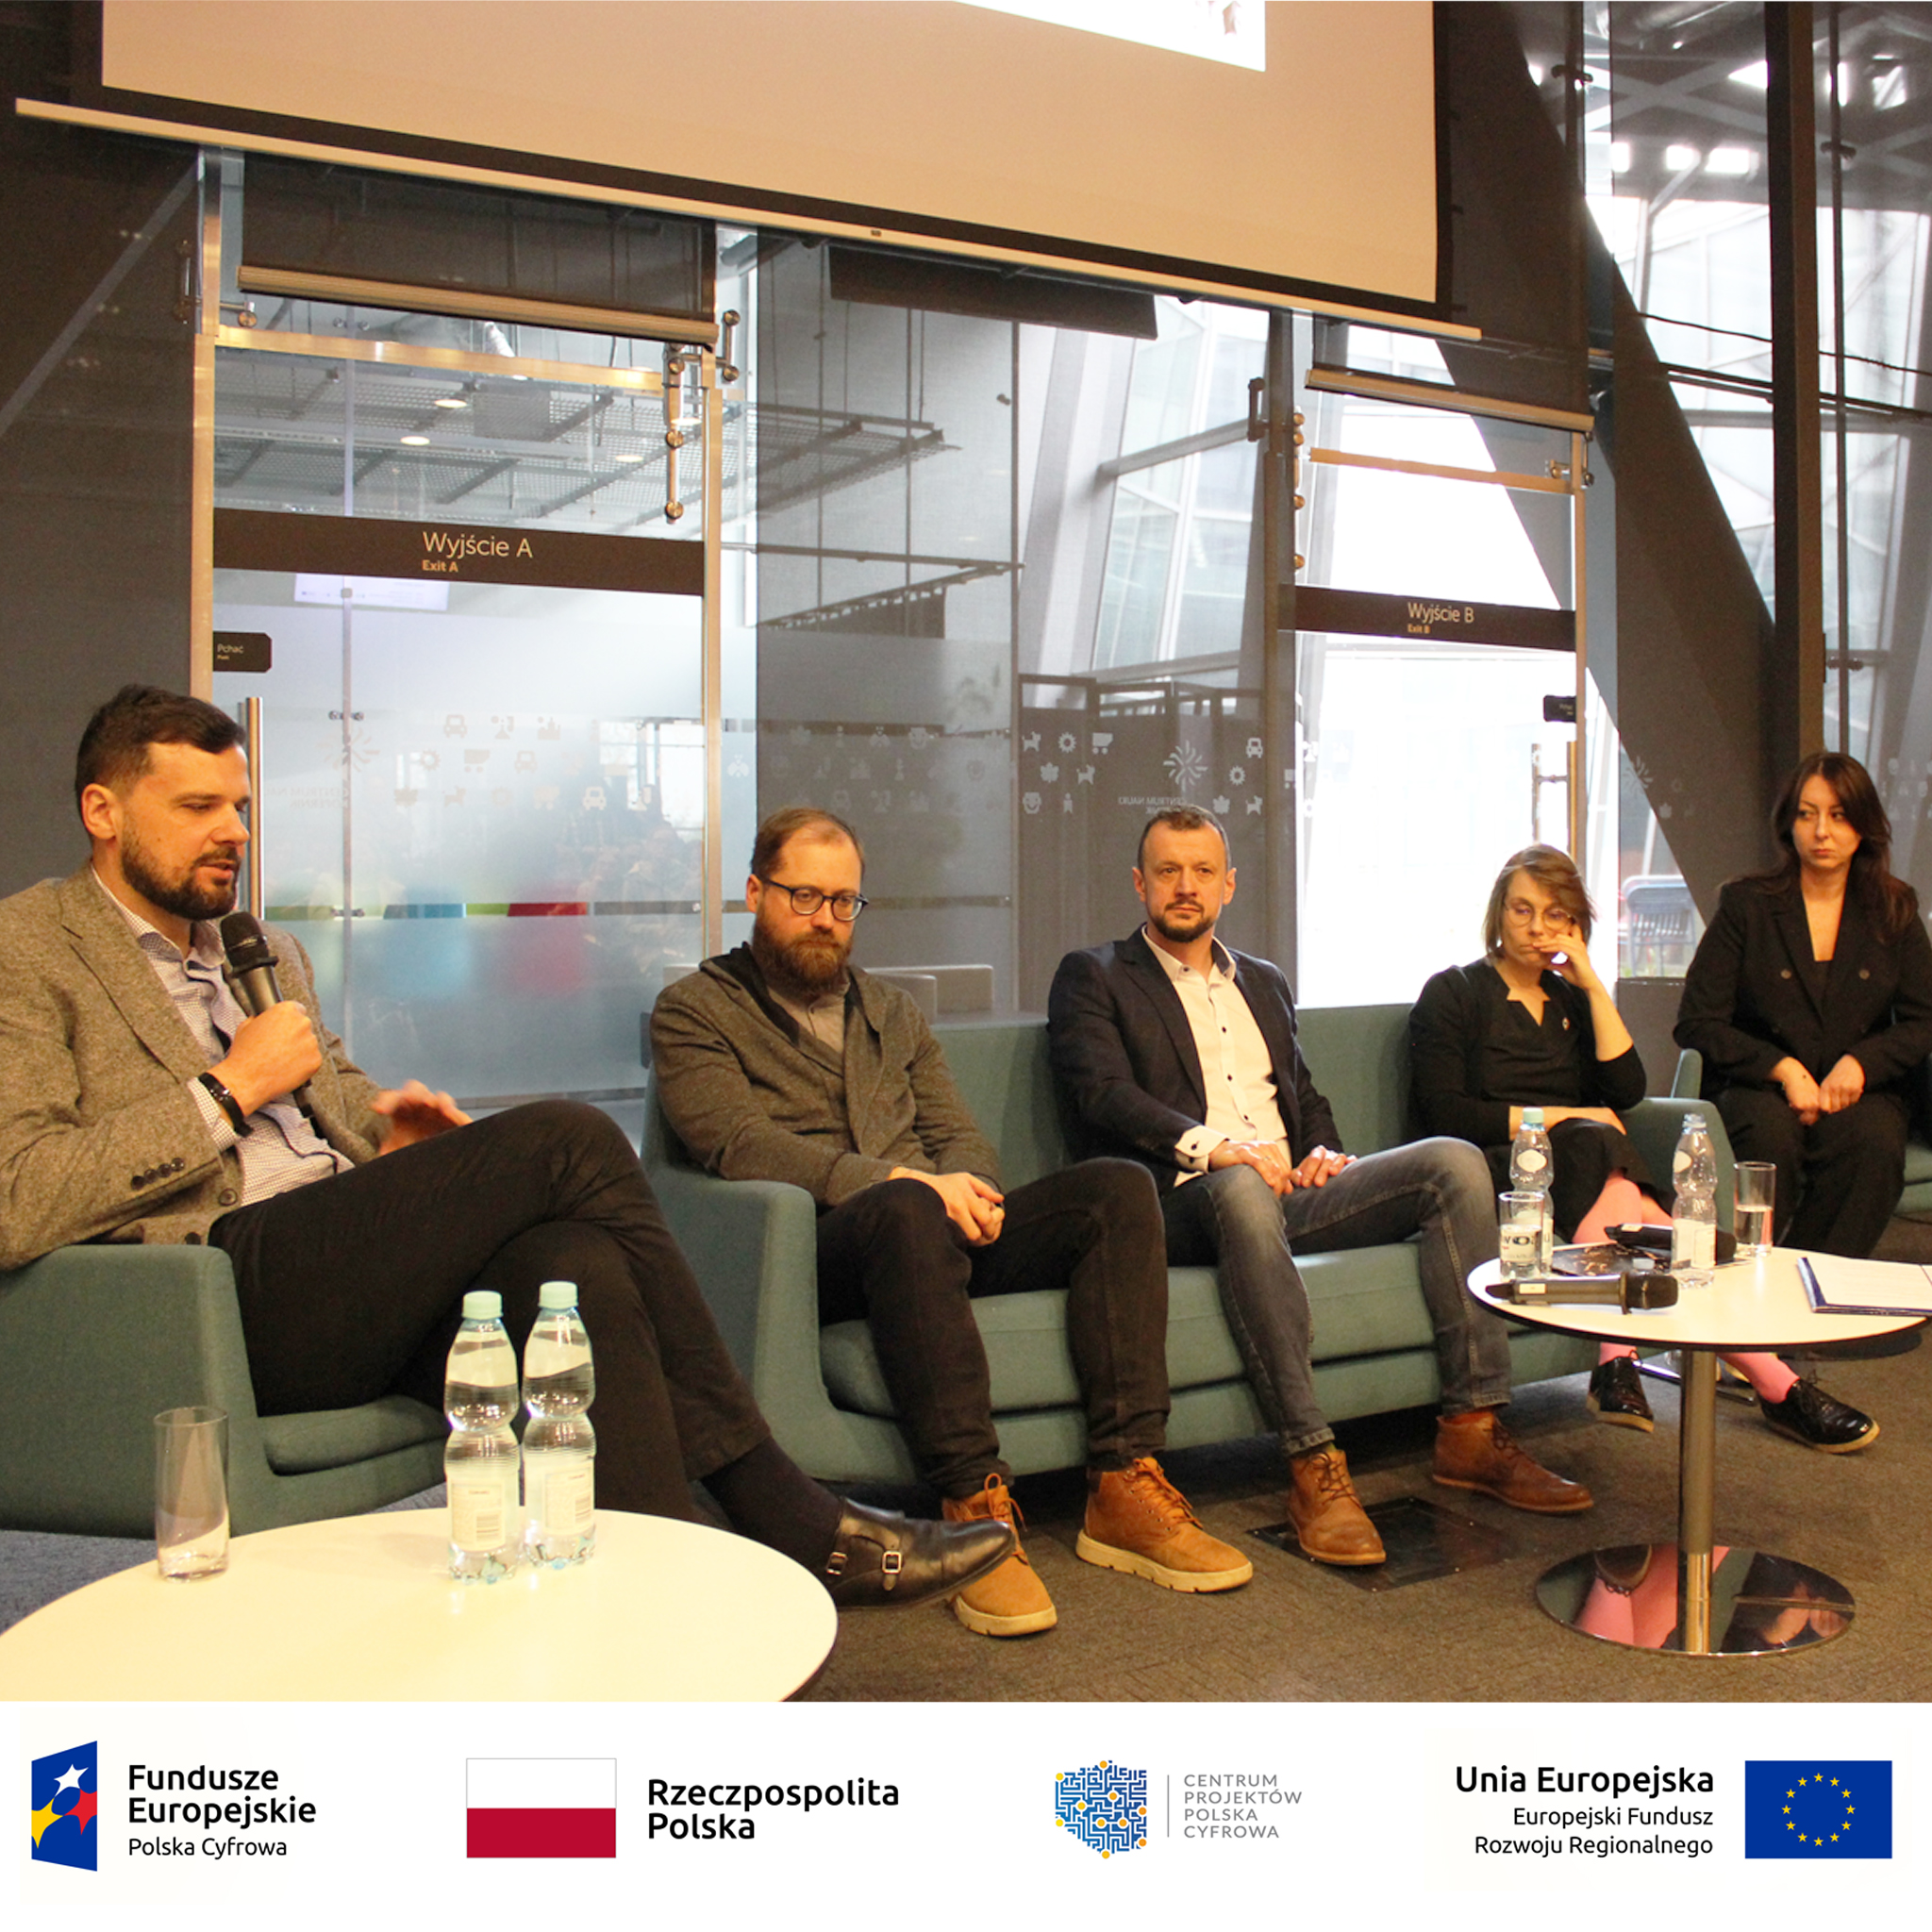 Forum dyskusyjne – Wojciech Szajnar, Maciej Naskręt, Artur Krawczyk, Magdalena Foltyniak, Anna Firych-Nowacka